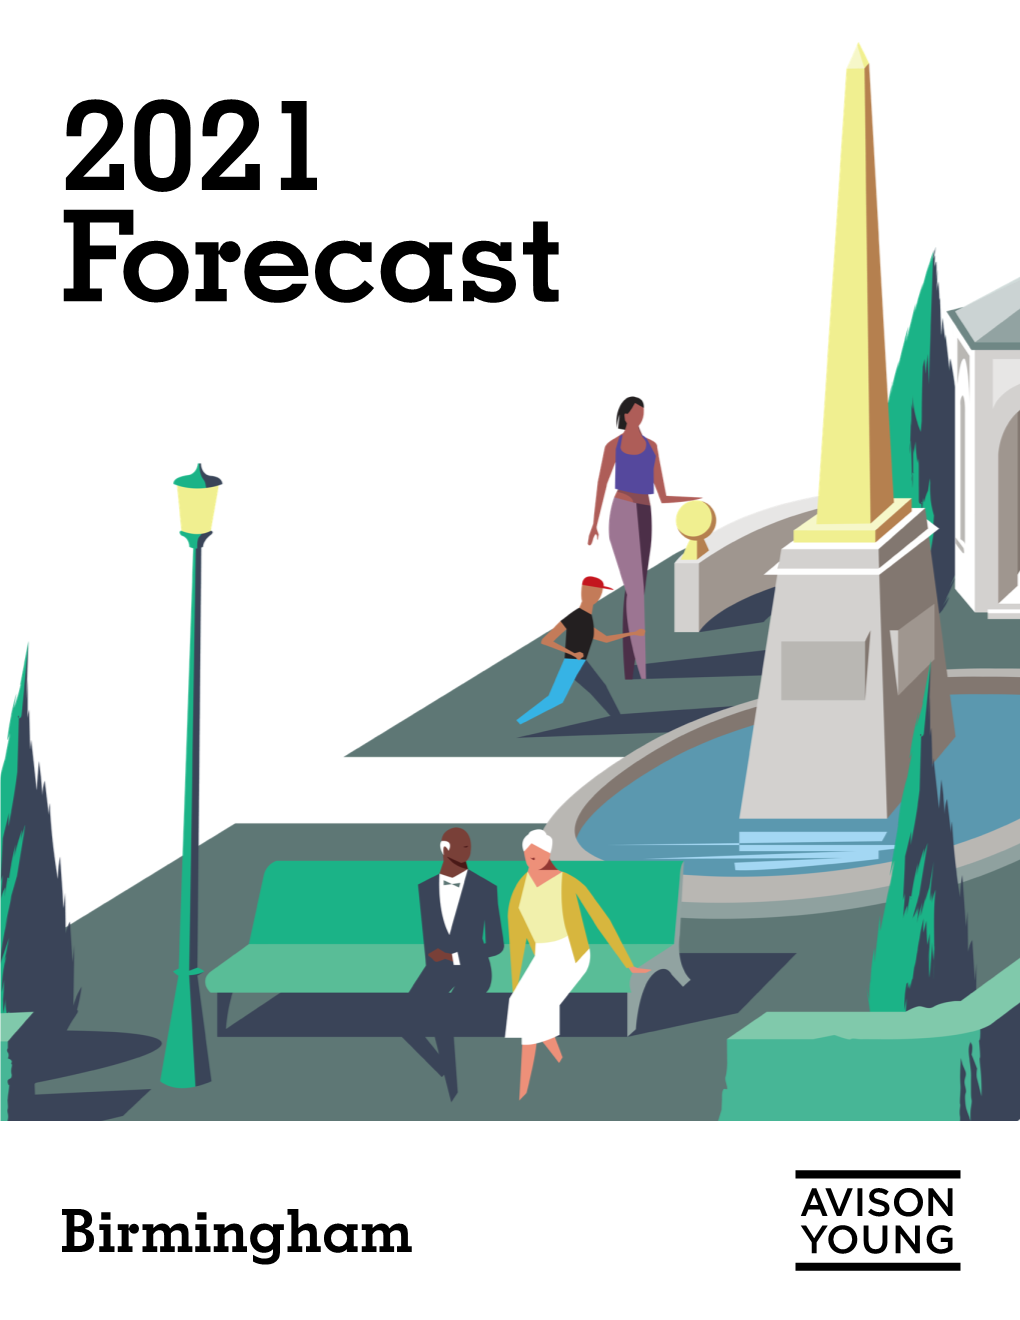 Birmingham 2021 Forecast Birmingham